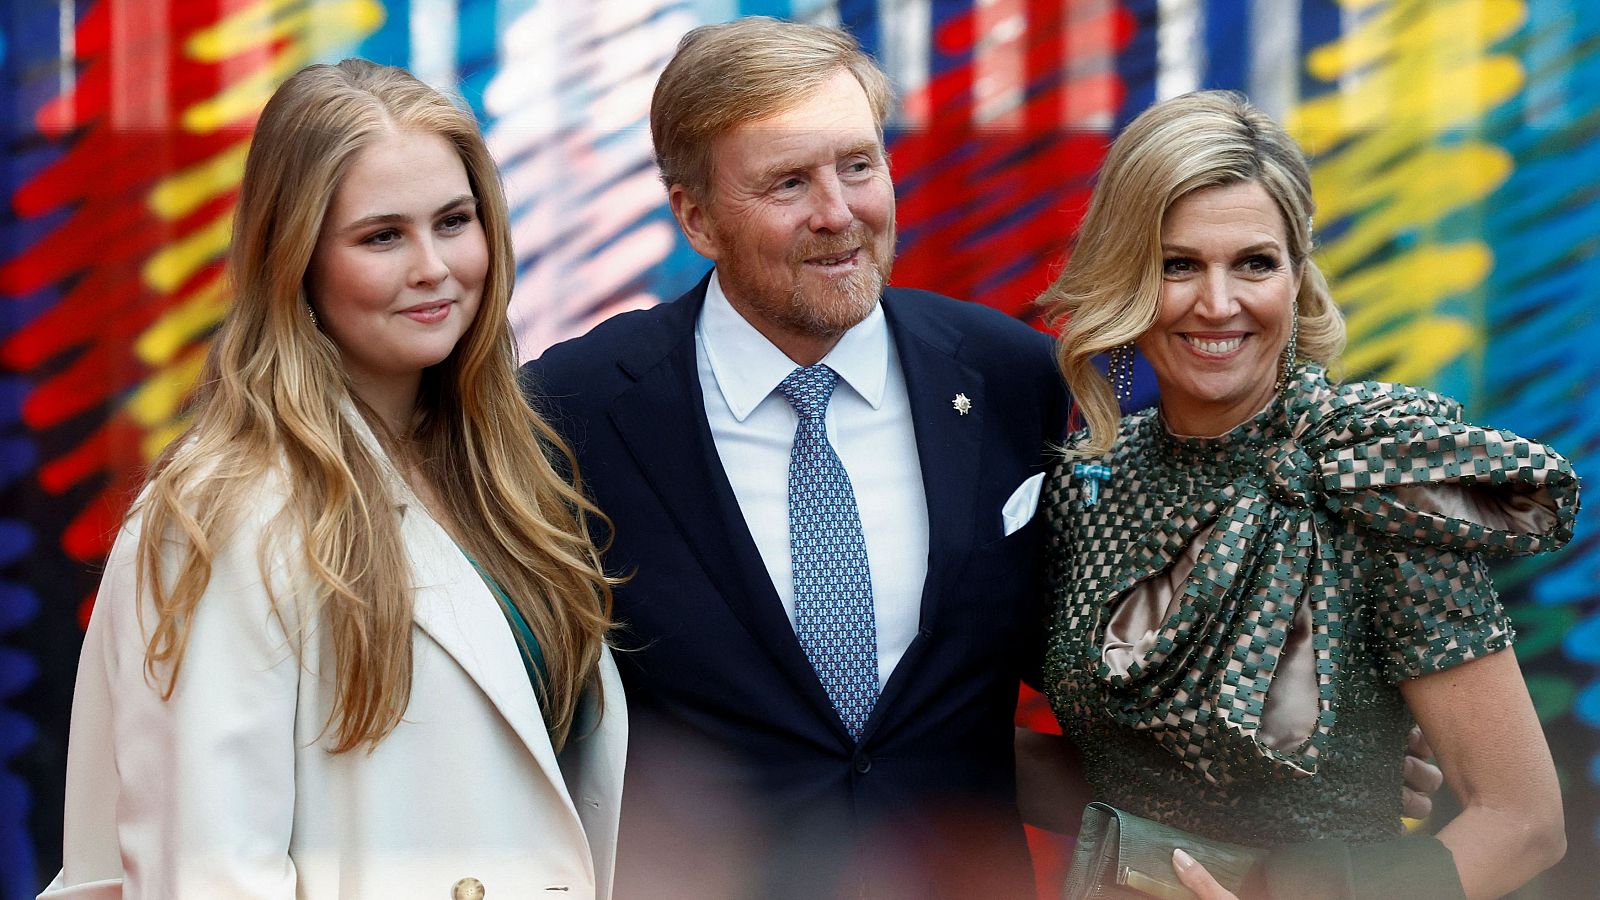 La princesa de los Países Bajos fue acogida en España tras ser amenazada por la mafia